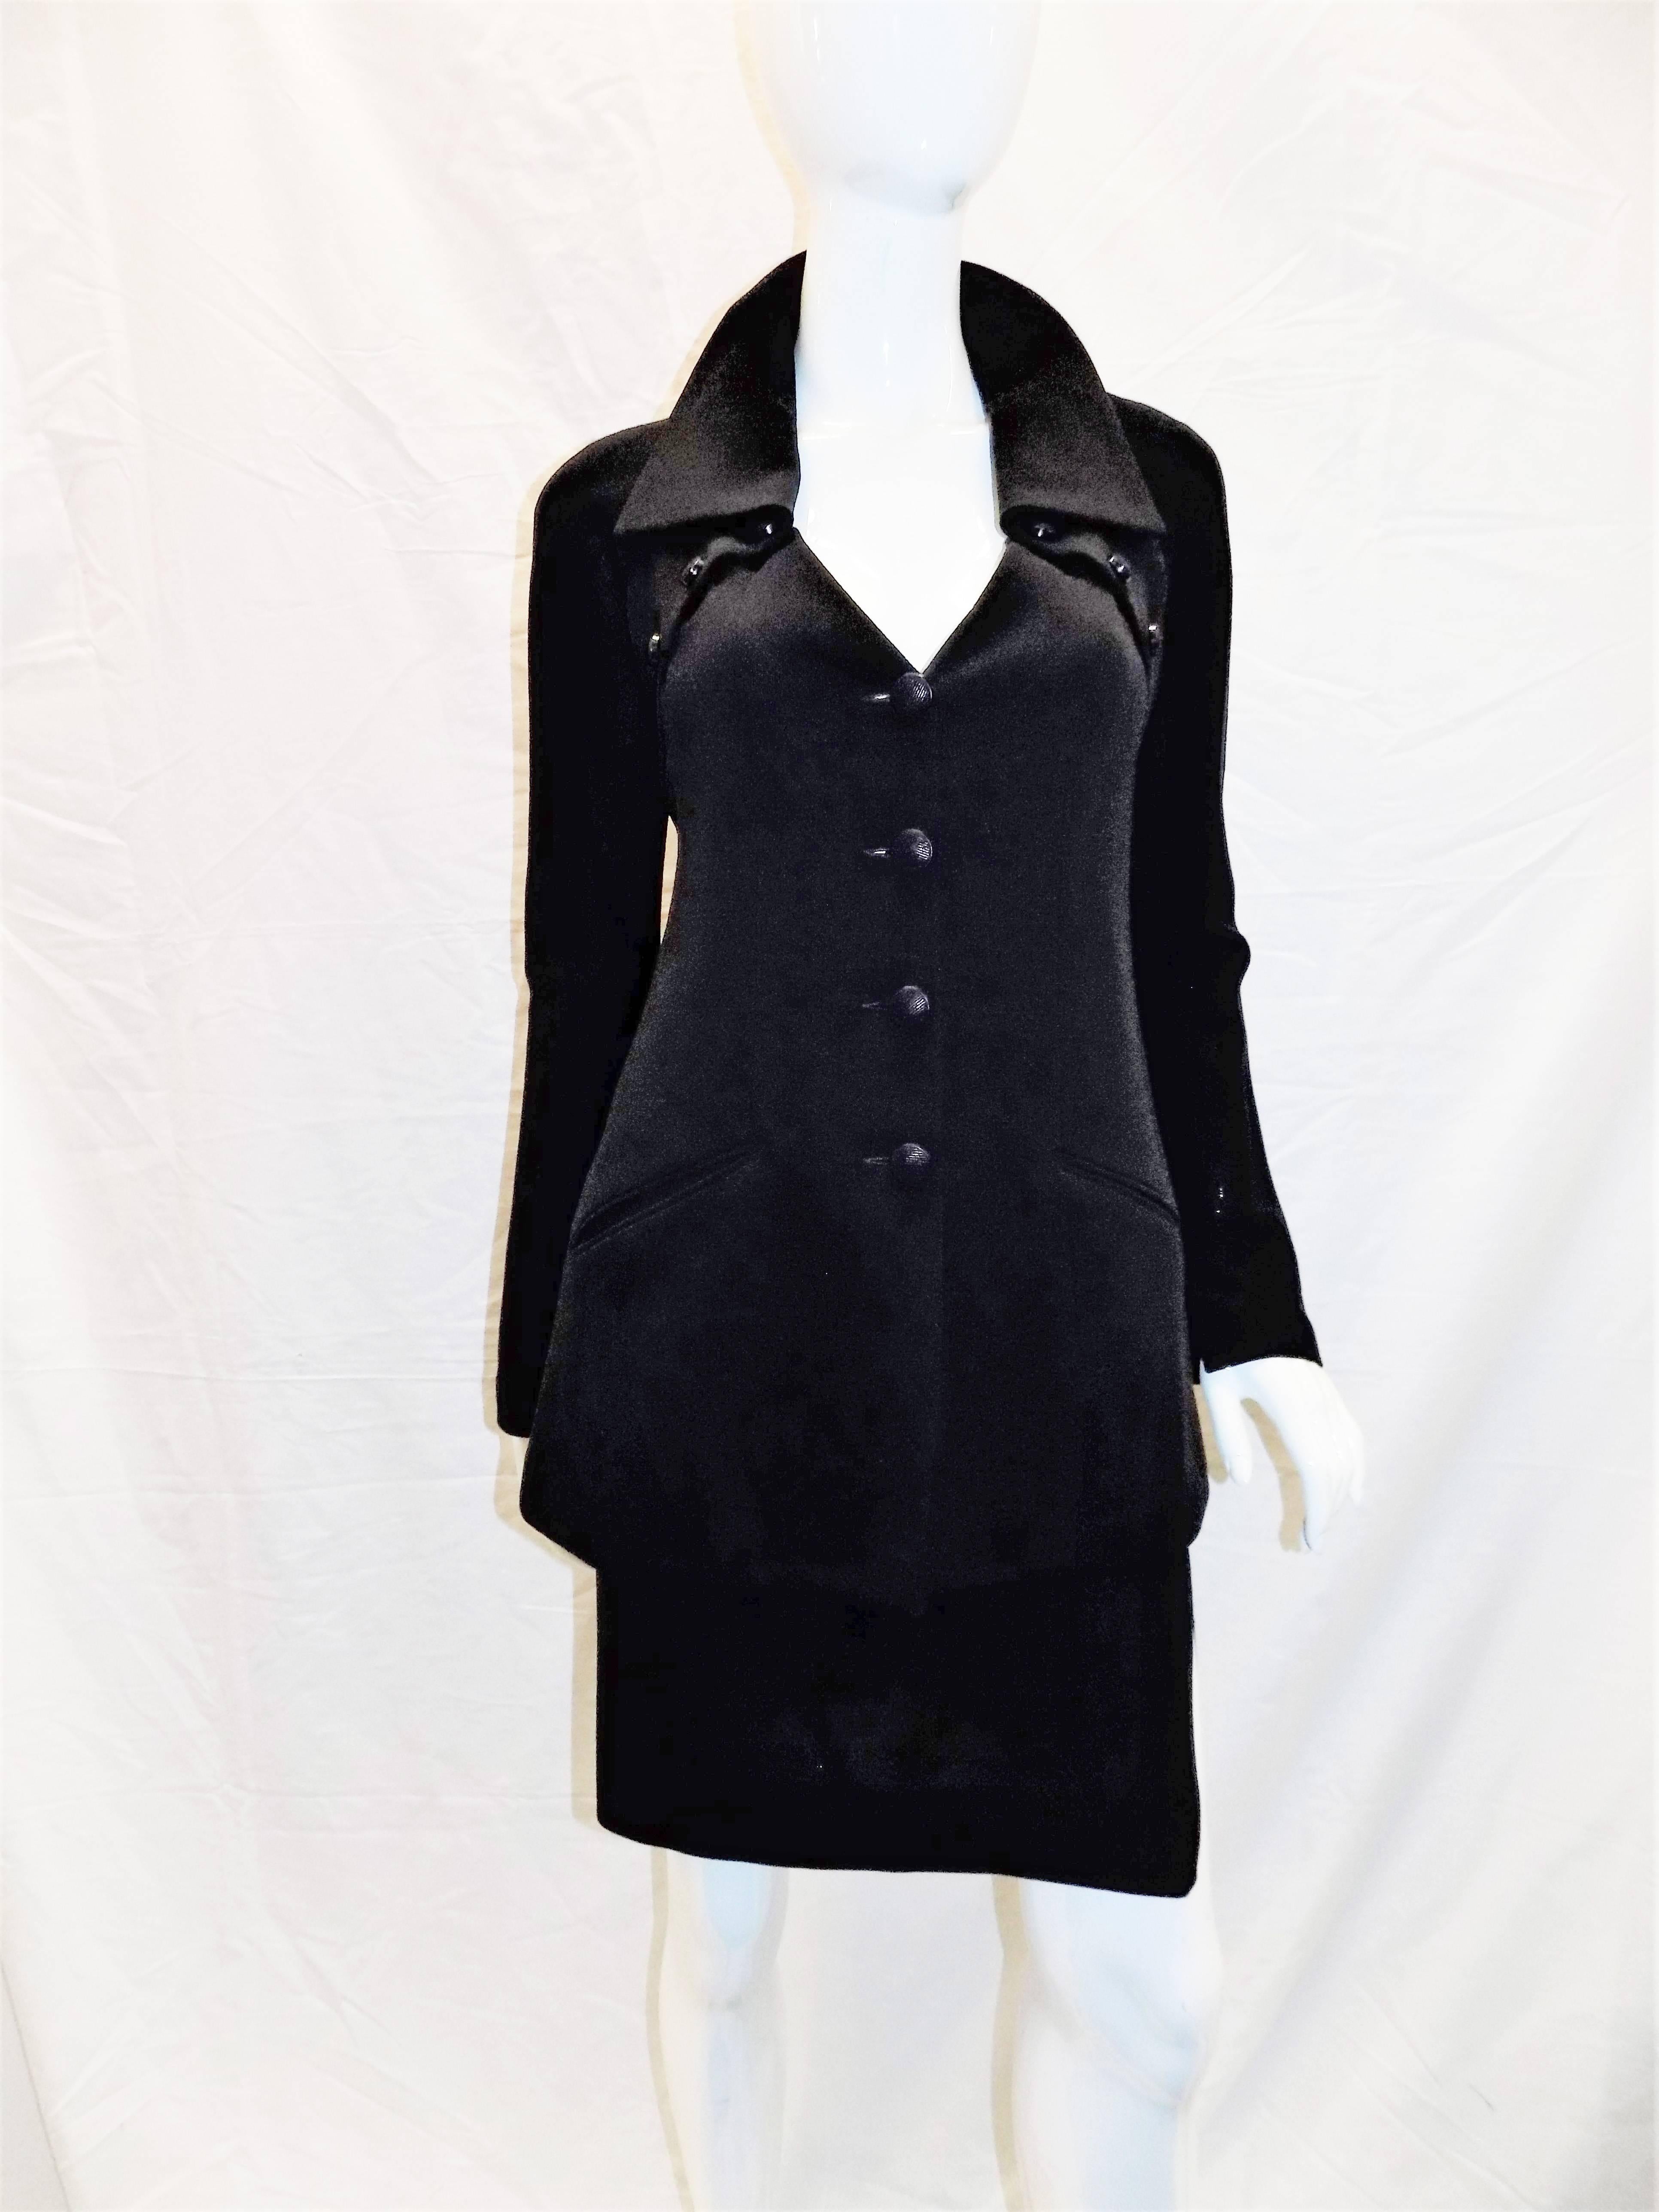  Chloe by Karl Lagerfeld Vintage black skirt suit  For Sale 1